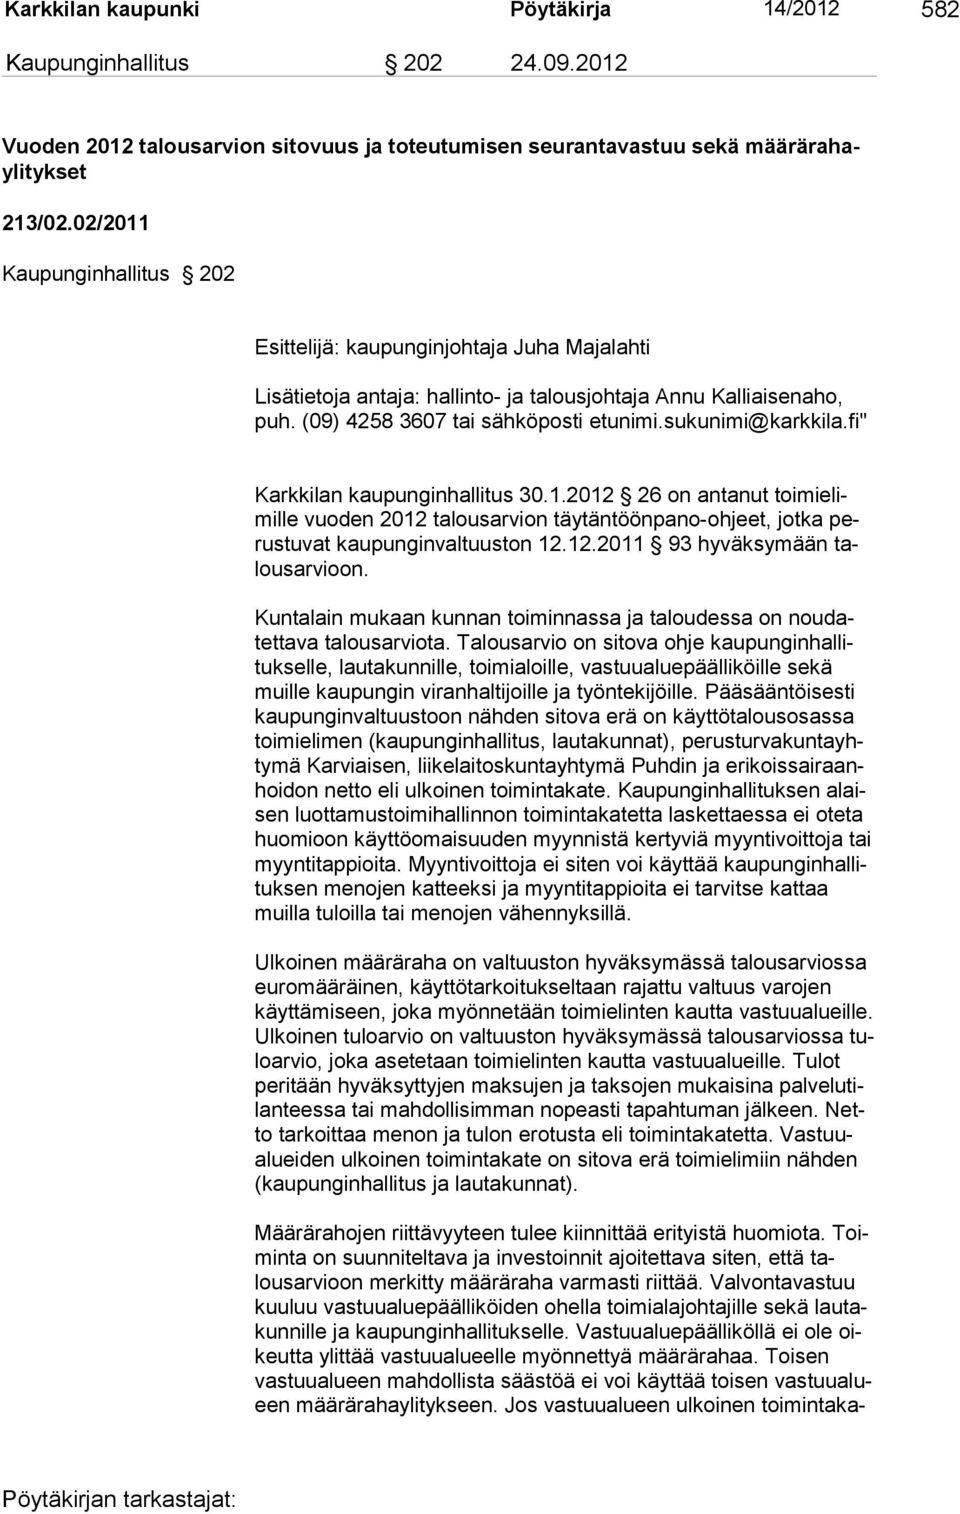 sukunimi@karkkila.fi" Karkkilan kaupunginhallitus 30.1.2012 26 on antanut toi mi elimille vuoden 2012 talousarvion täytäntöönpano-ohjeet, jotka perustuvat kaupunginvaltuuston 12.12.2011 93 hyväksymään talous ar vioon.